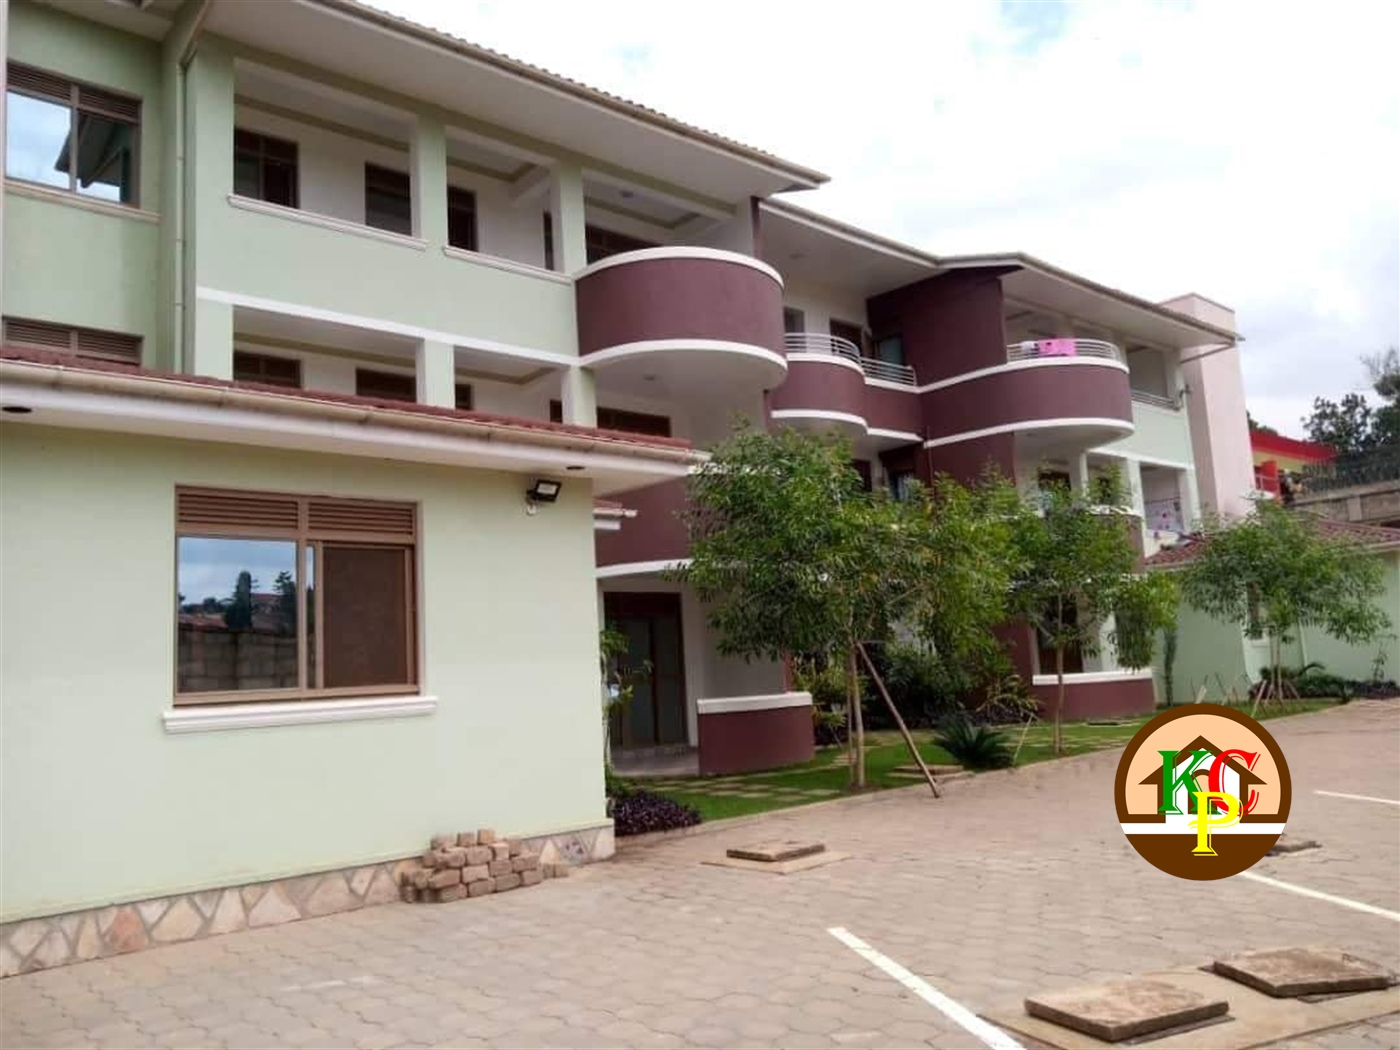 Apartment block for sale in Ninda Kampala